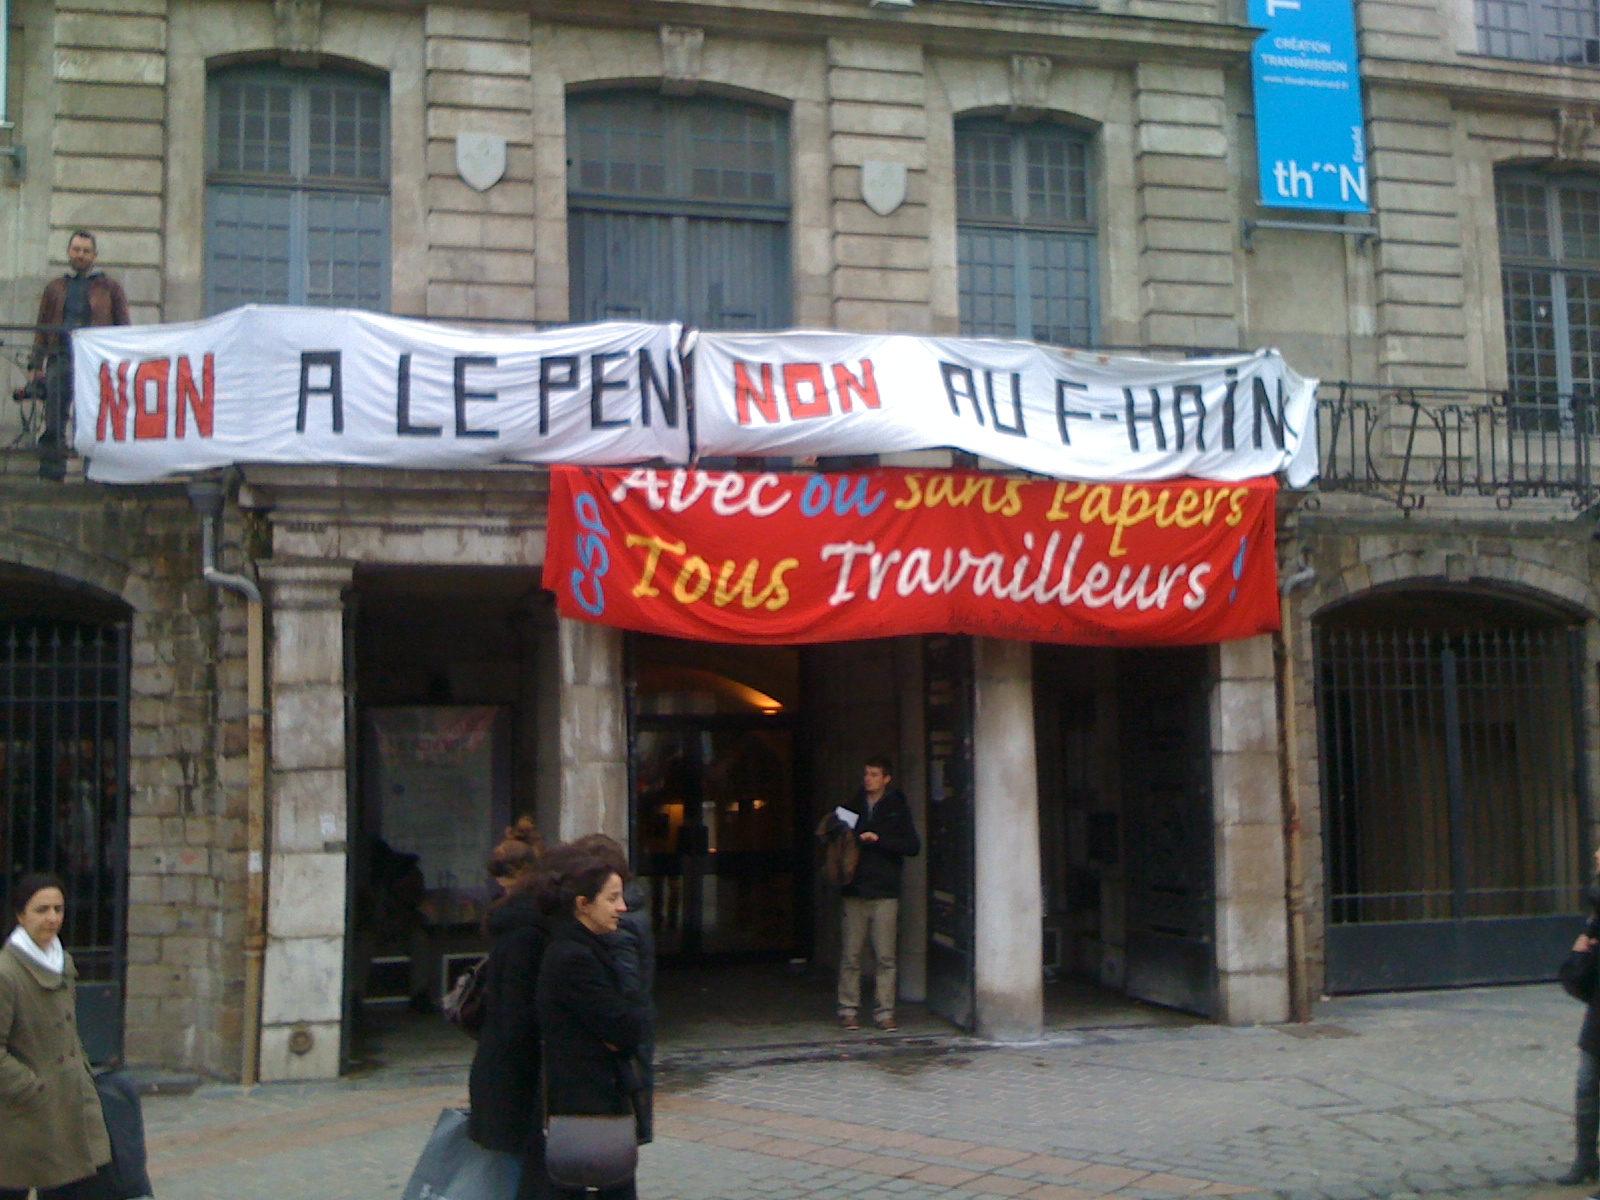   Rassemblement anti-fasciste le 18 février à Lille